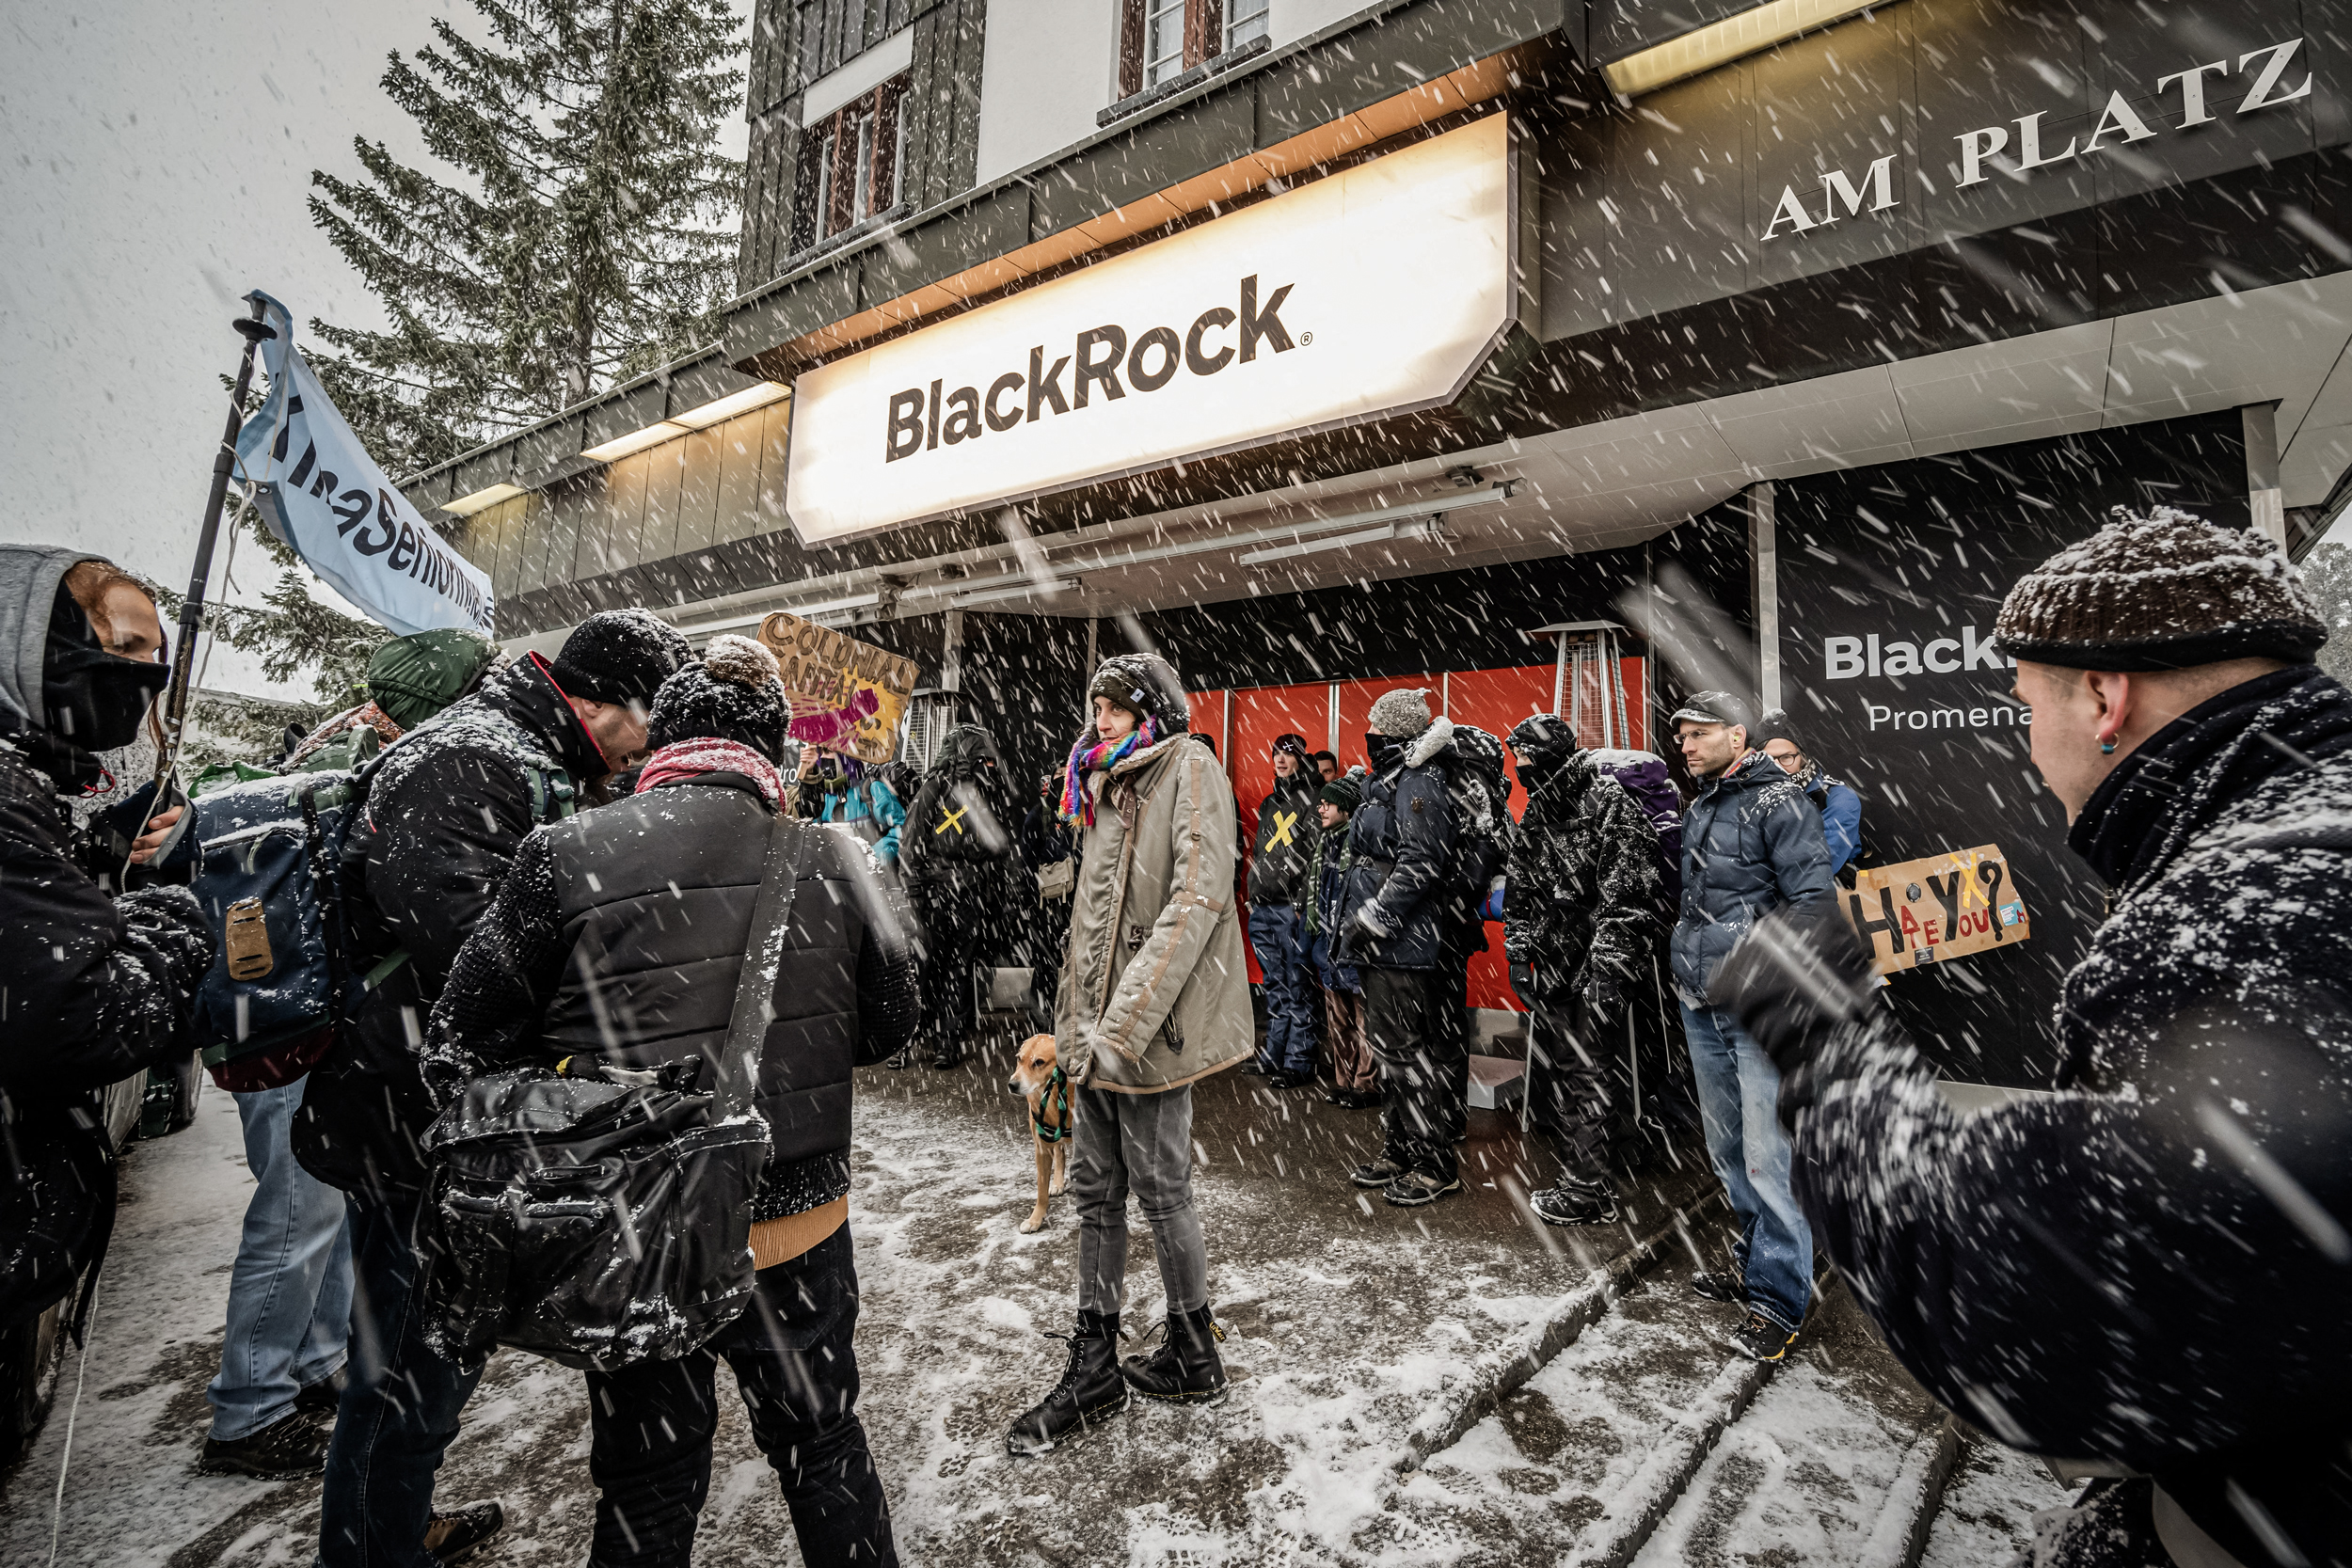 (Ảnh trên bên trái) Ông Larry Fink, Giám đốc điều hành của Blackrock, tham dự một cuộc thảo luận bàn tròn thúc đẩy quá trình chuyển đổi năng lượng toàn cầu tại hội nghị khí hậu của Liên Hiệp Quốc ở Dubai ngày 04/12/2023. (Ảnh trên bên phải) Người dân đi ngang qua Sở Giao dịch Chứng khoán New York ngày 19/01/2024. (Ảnh dưới) Các nhà hoạt động của Hiệp hội Thanh niên Xã hội Chủ nghĩa Thụy Sĩ phản đối BlackRock trước thềm cuộc họp WEF ở Davos, ngày 15/01/2022. (Ảnh: Sean Gallup/Getty Images, Spencer Platt/Getty Images, Fabrice Coffrini/AFP qua Getty Images)